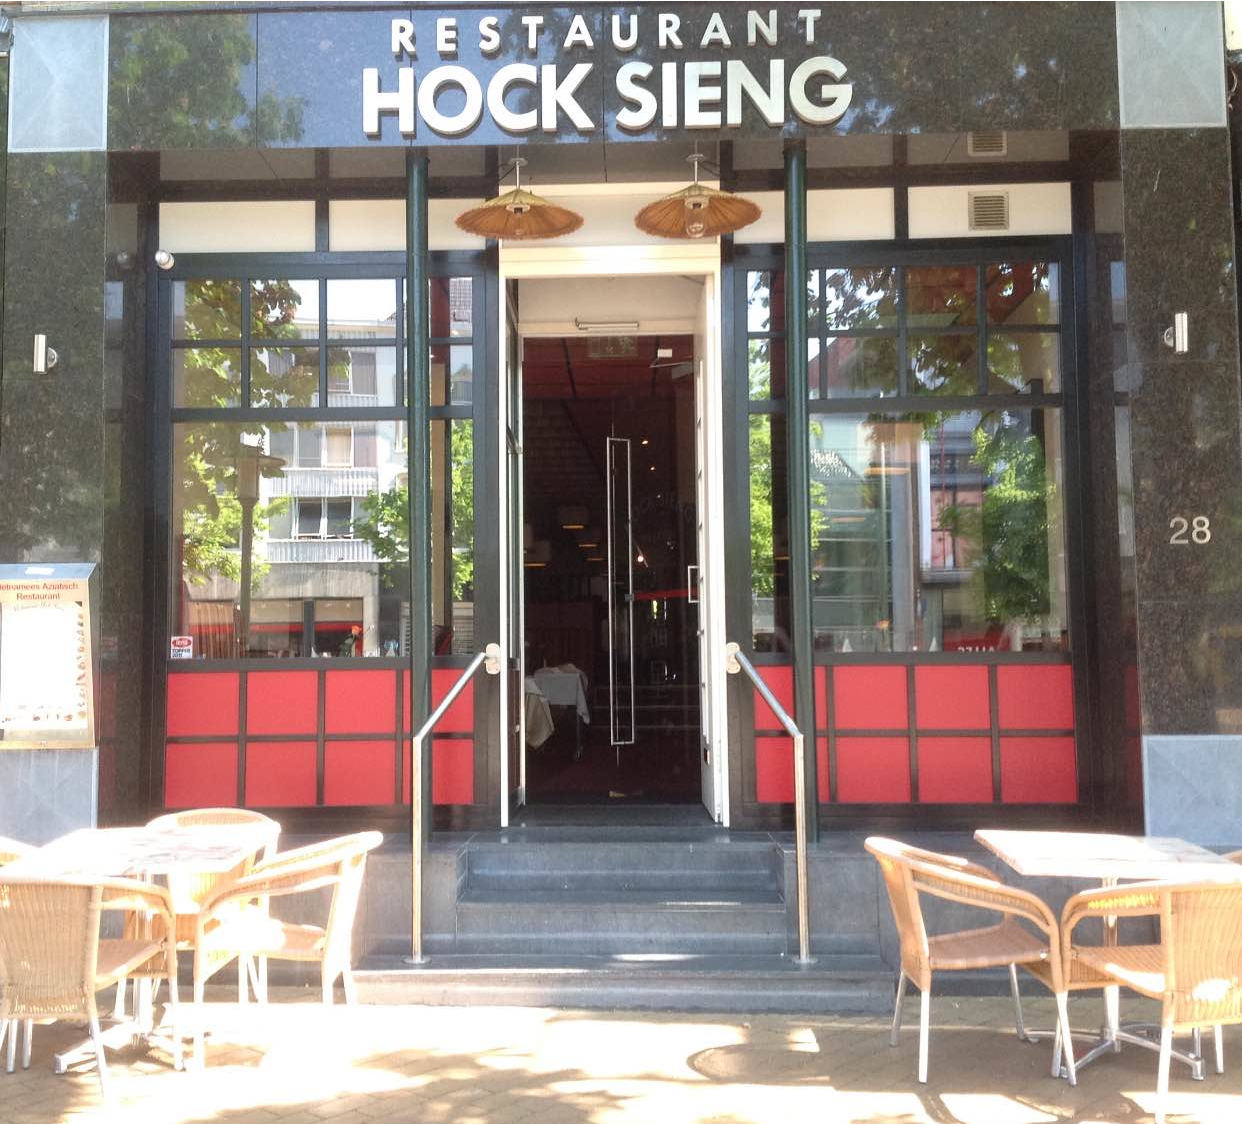 Restaurant Hock Sieng photo via own website